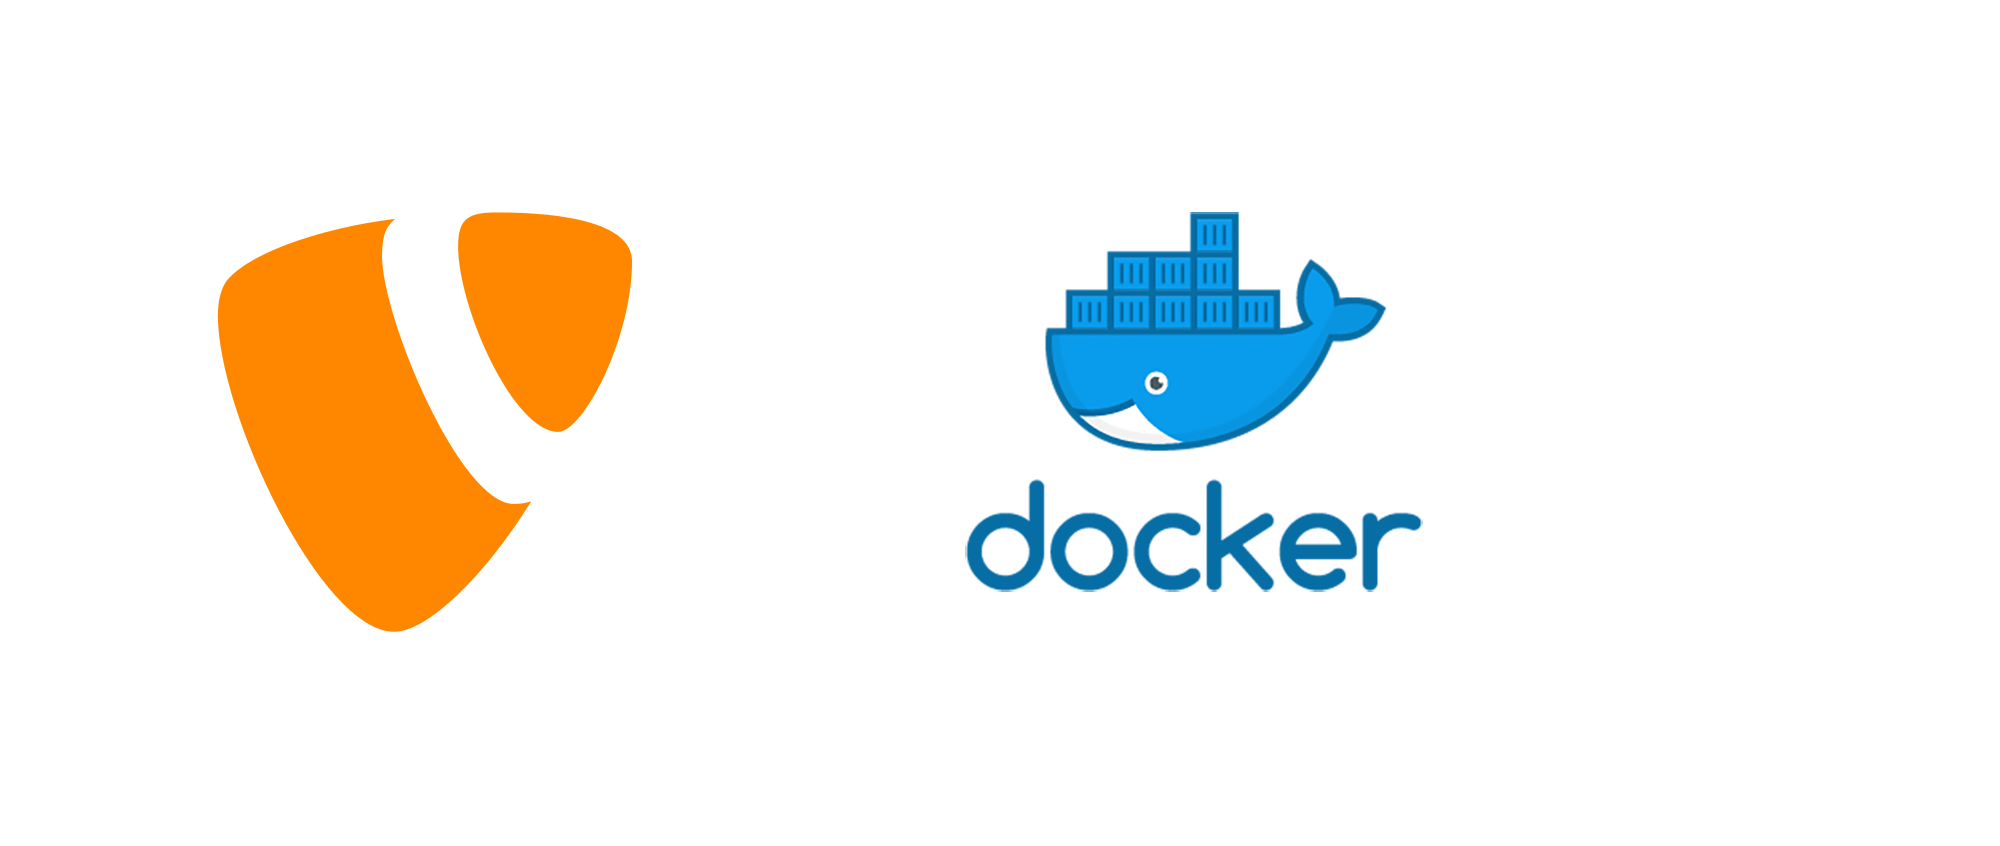 Docker exec user